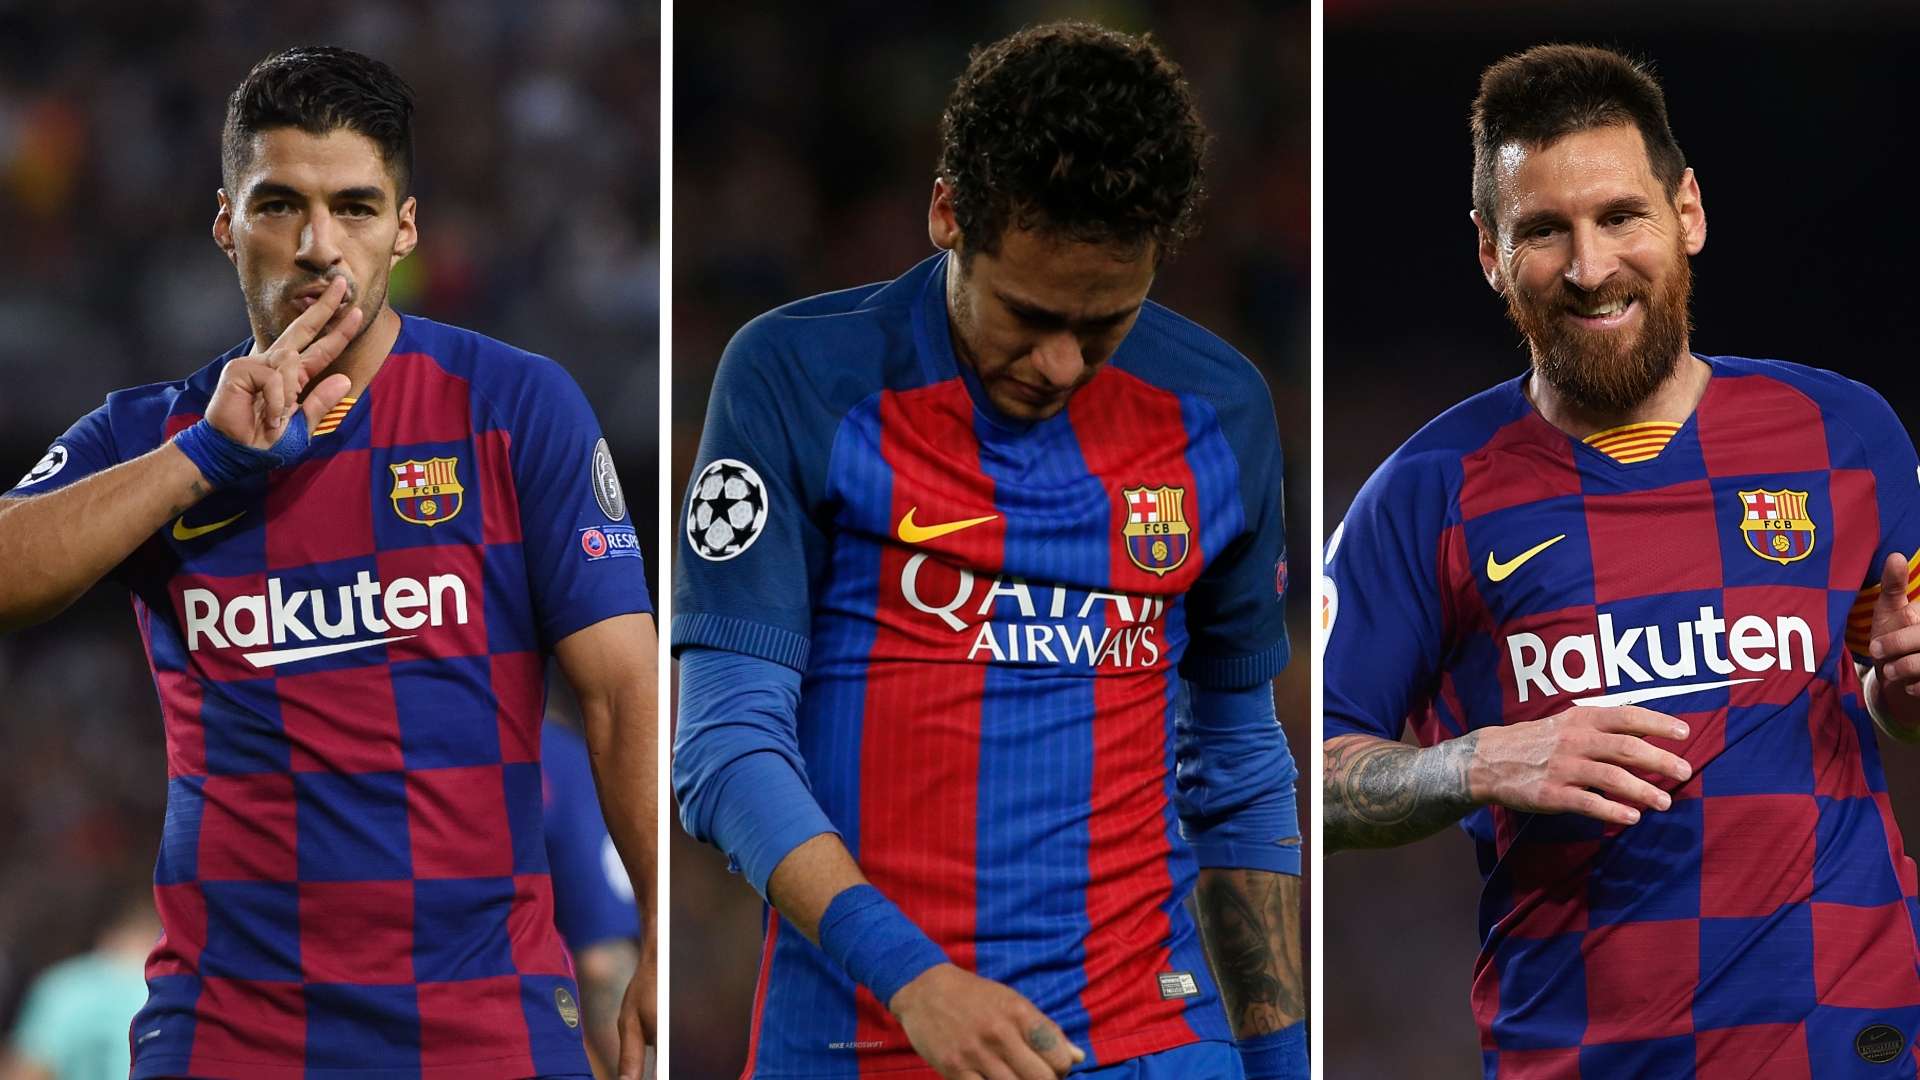 Suarez/Neymar/Messi split